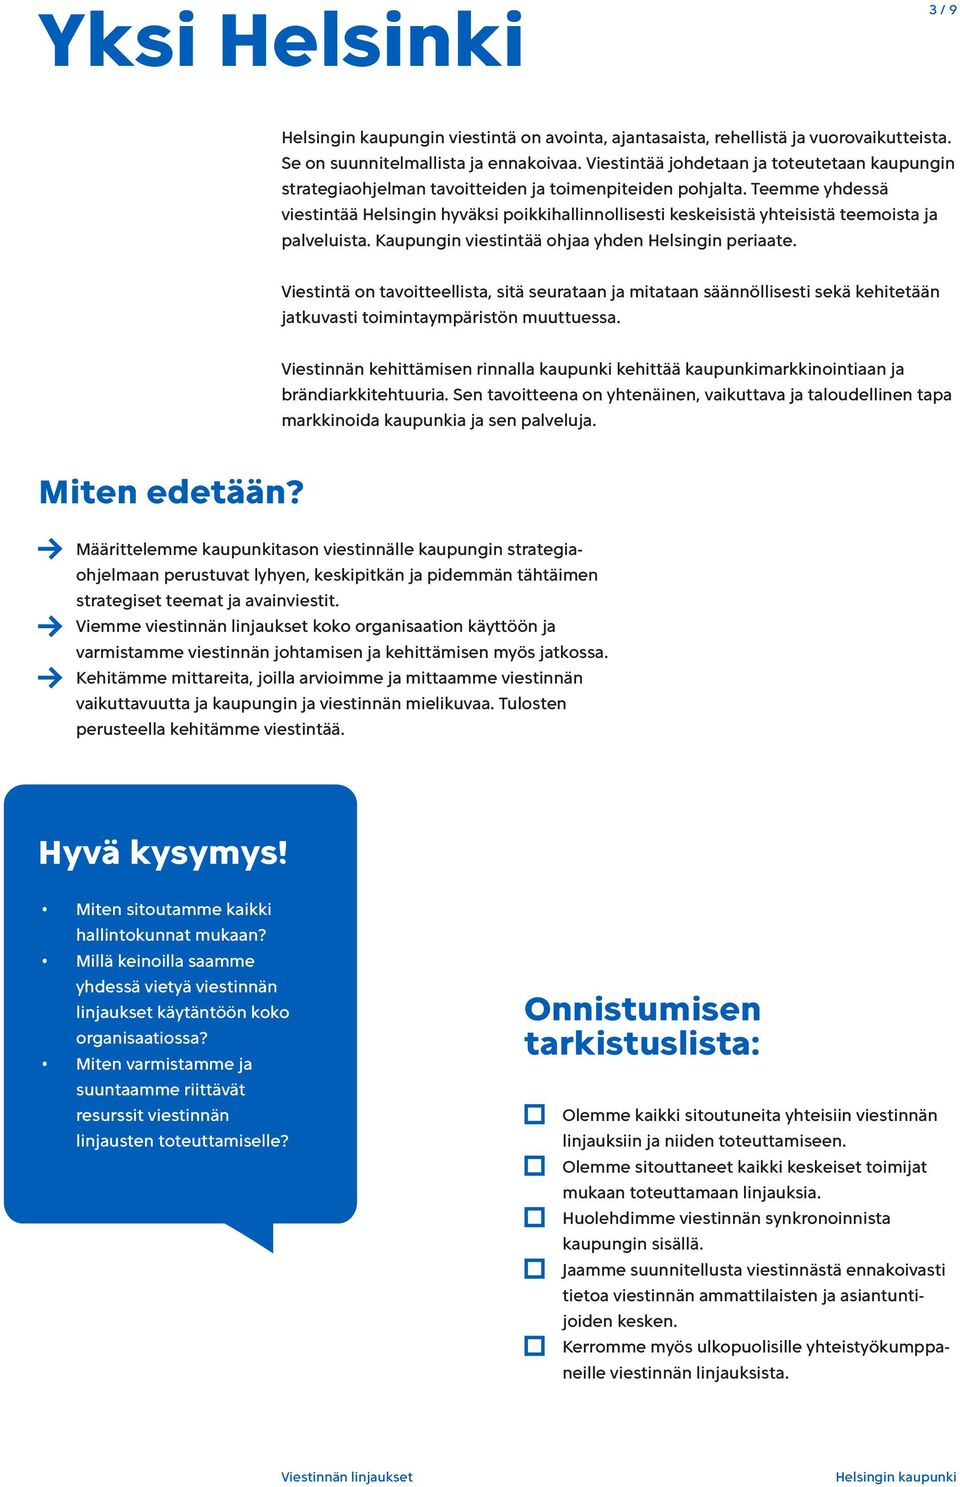 Teemme yhdessä viestintää Helsingin hyväksi poikkihallinnollisesti keskeisistä yhteisistä teemoista ja palveluista. Kaupungin viestintää ohjaa yhden Helsingin periaate.